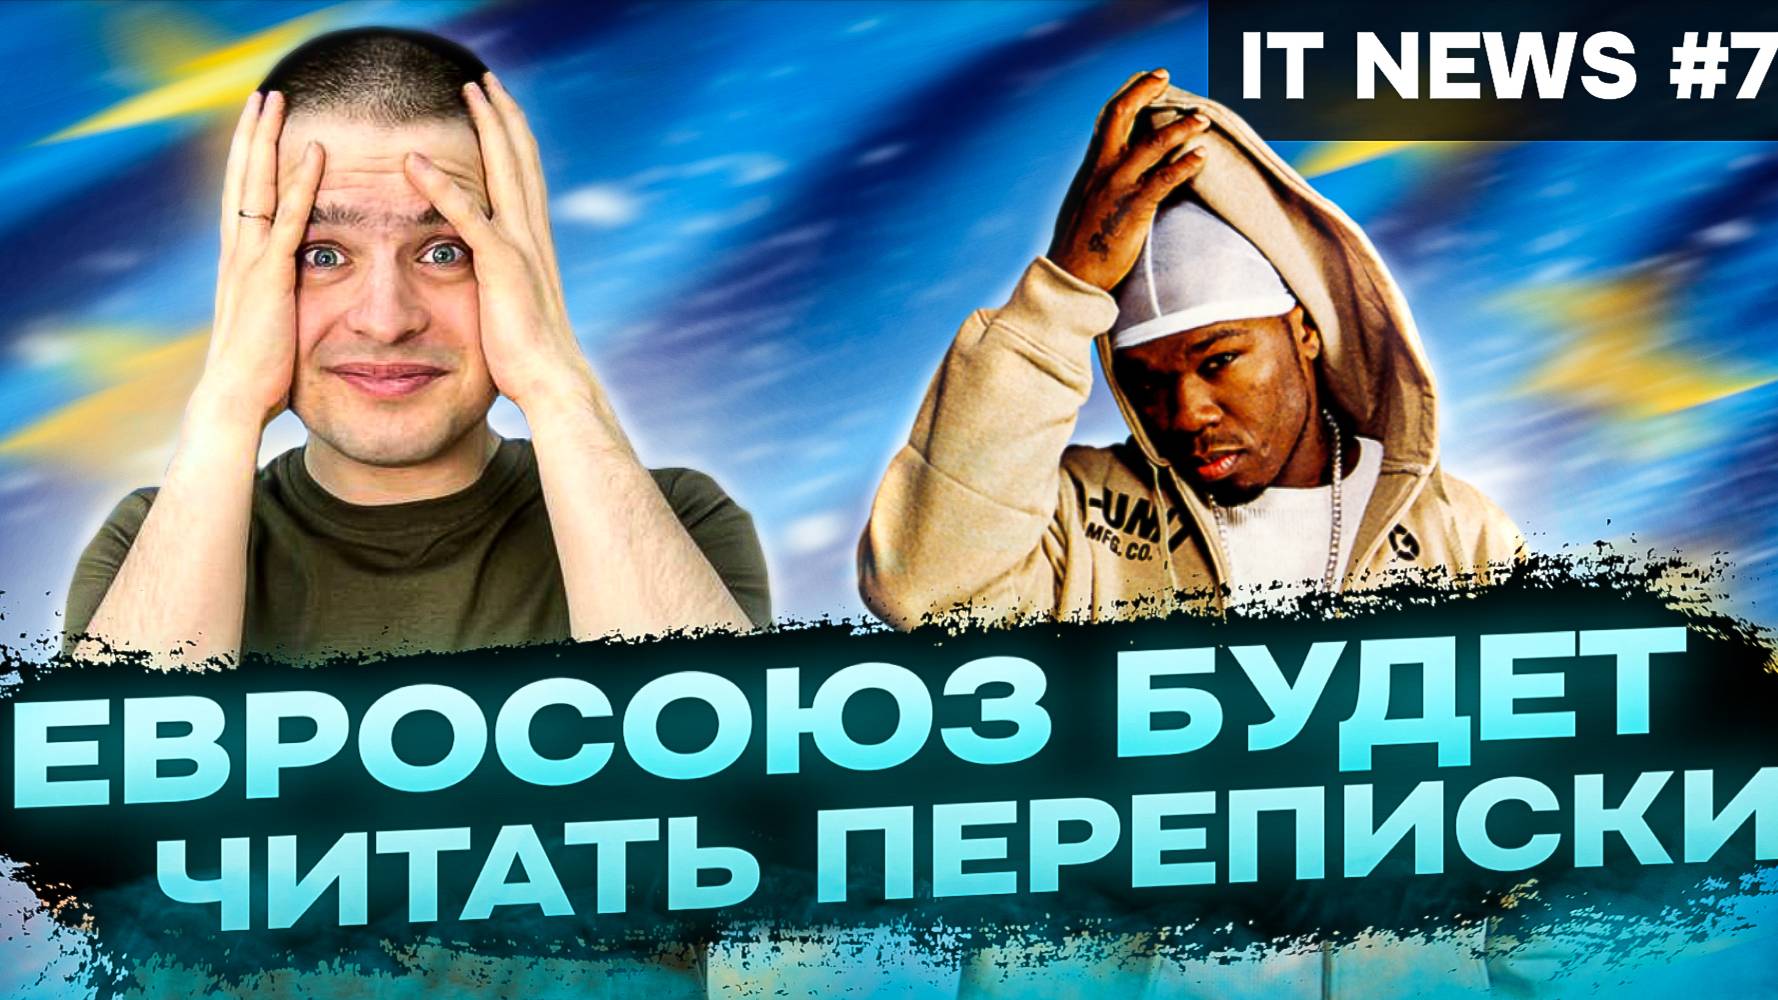 Взлом 50 Cent // Cкамерская Banana // Zoom ушел из России // №78